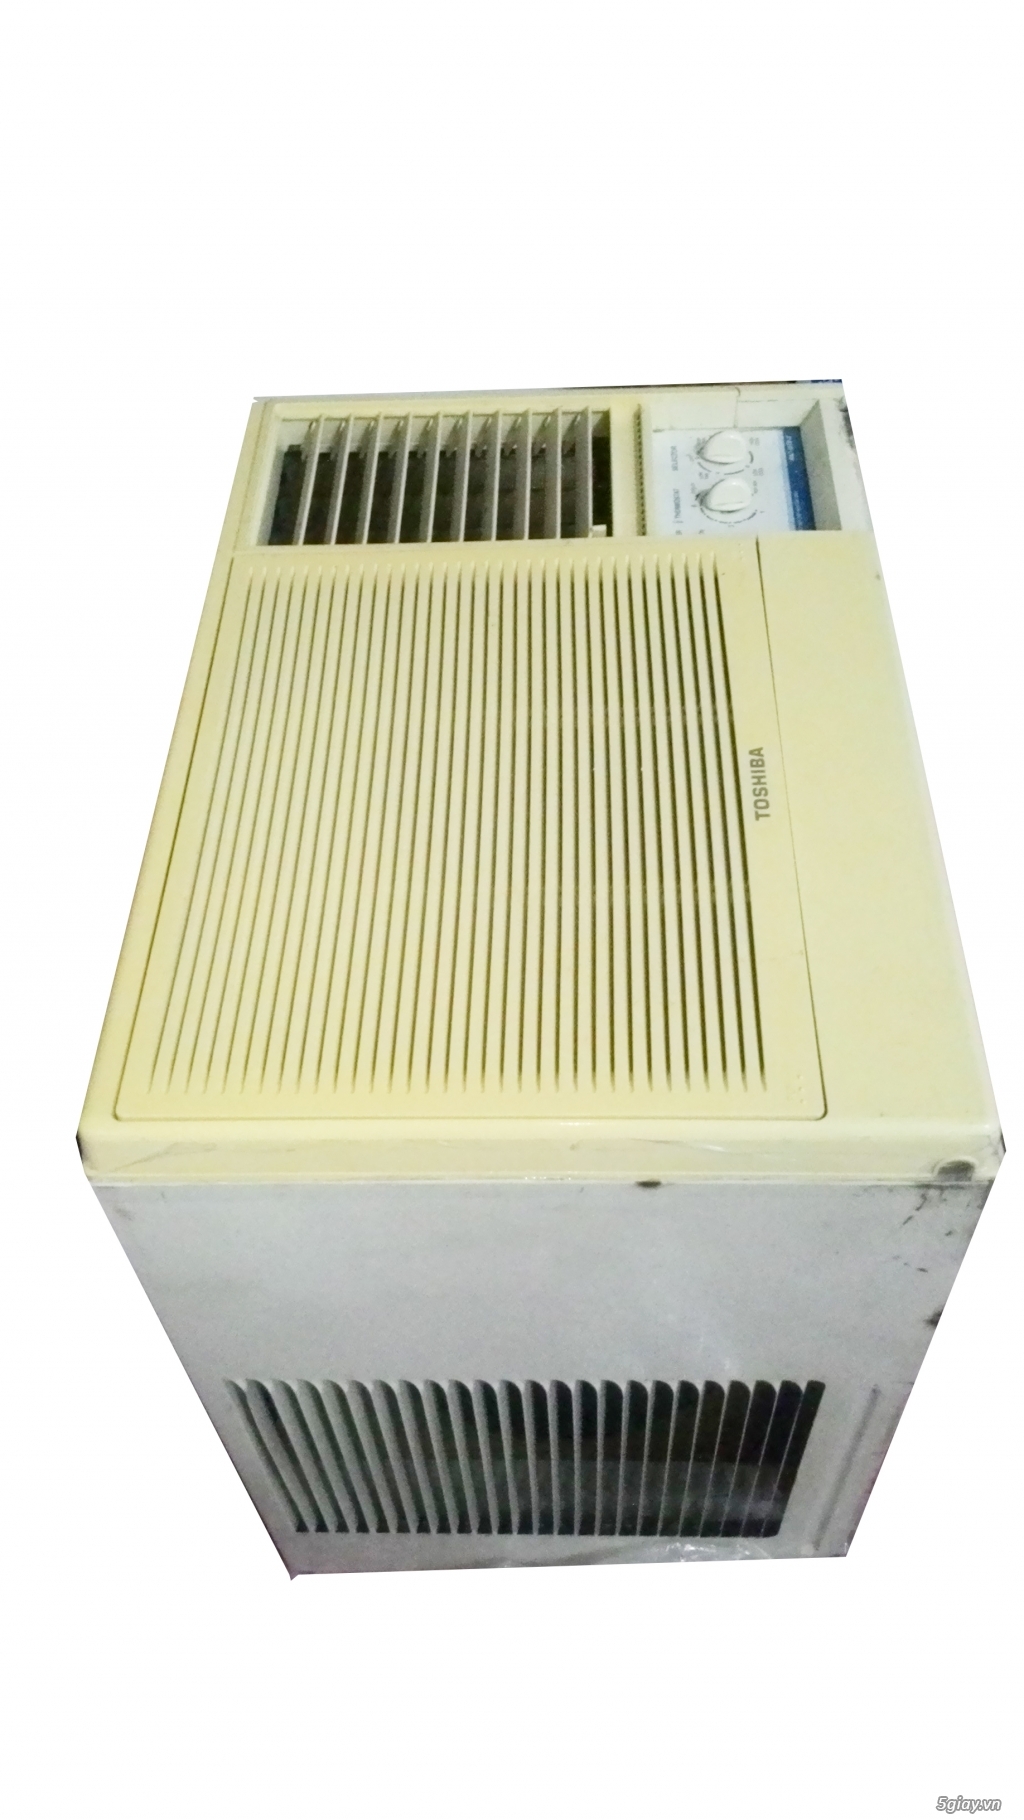 Cung Cấp Các Loại Máy Lạnh, Nồi Cơm IH, Tủ Lạnh Inverter Hàng Nhật Chất Lượng - 2